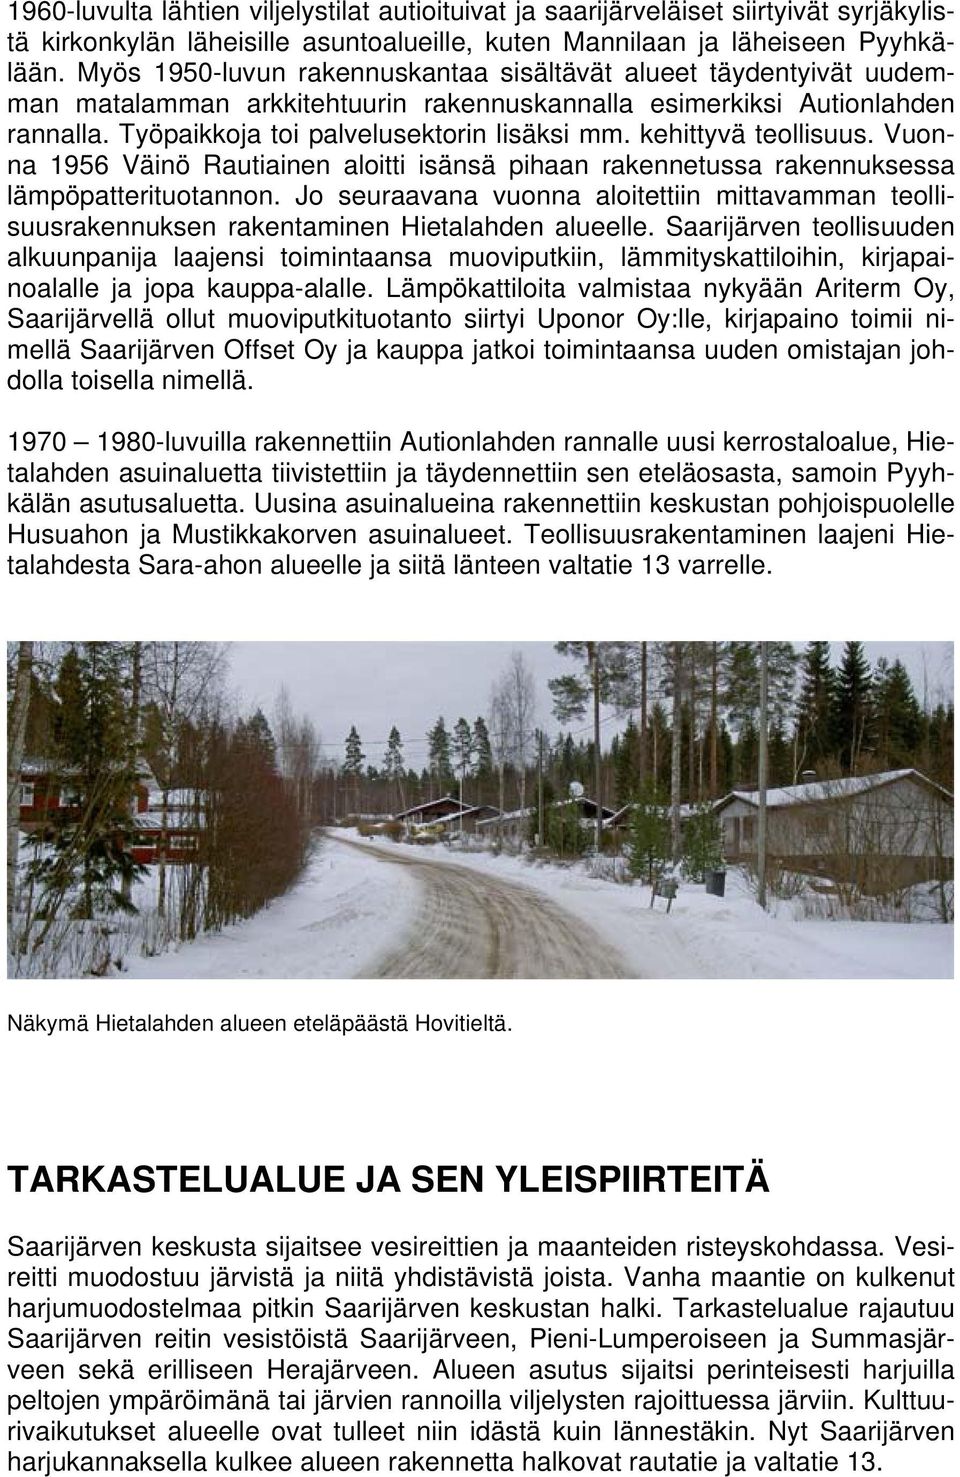 kehittyvä teollisuus. Vuonna 1956 Väinö Rautiainen aloitti isänsä pihaan rakennetussa rakennuksessa lämpöpatterituotannon.